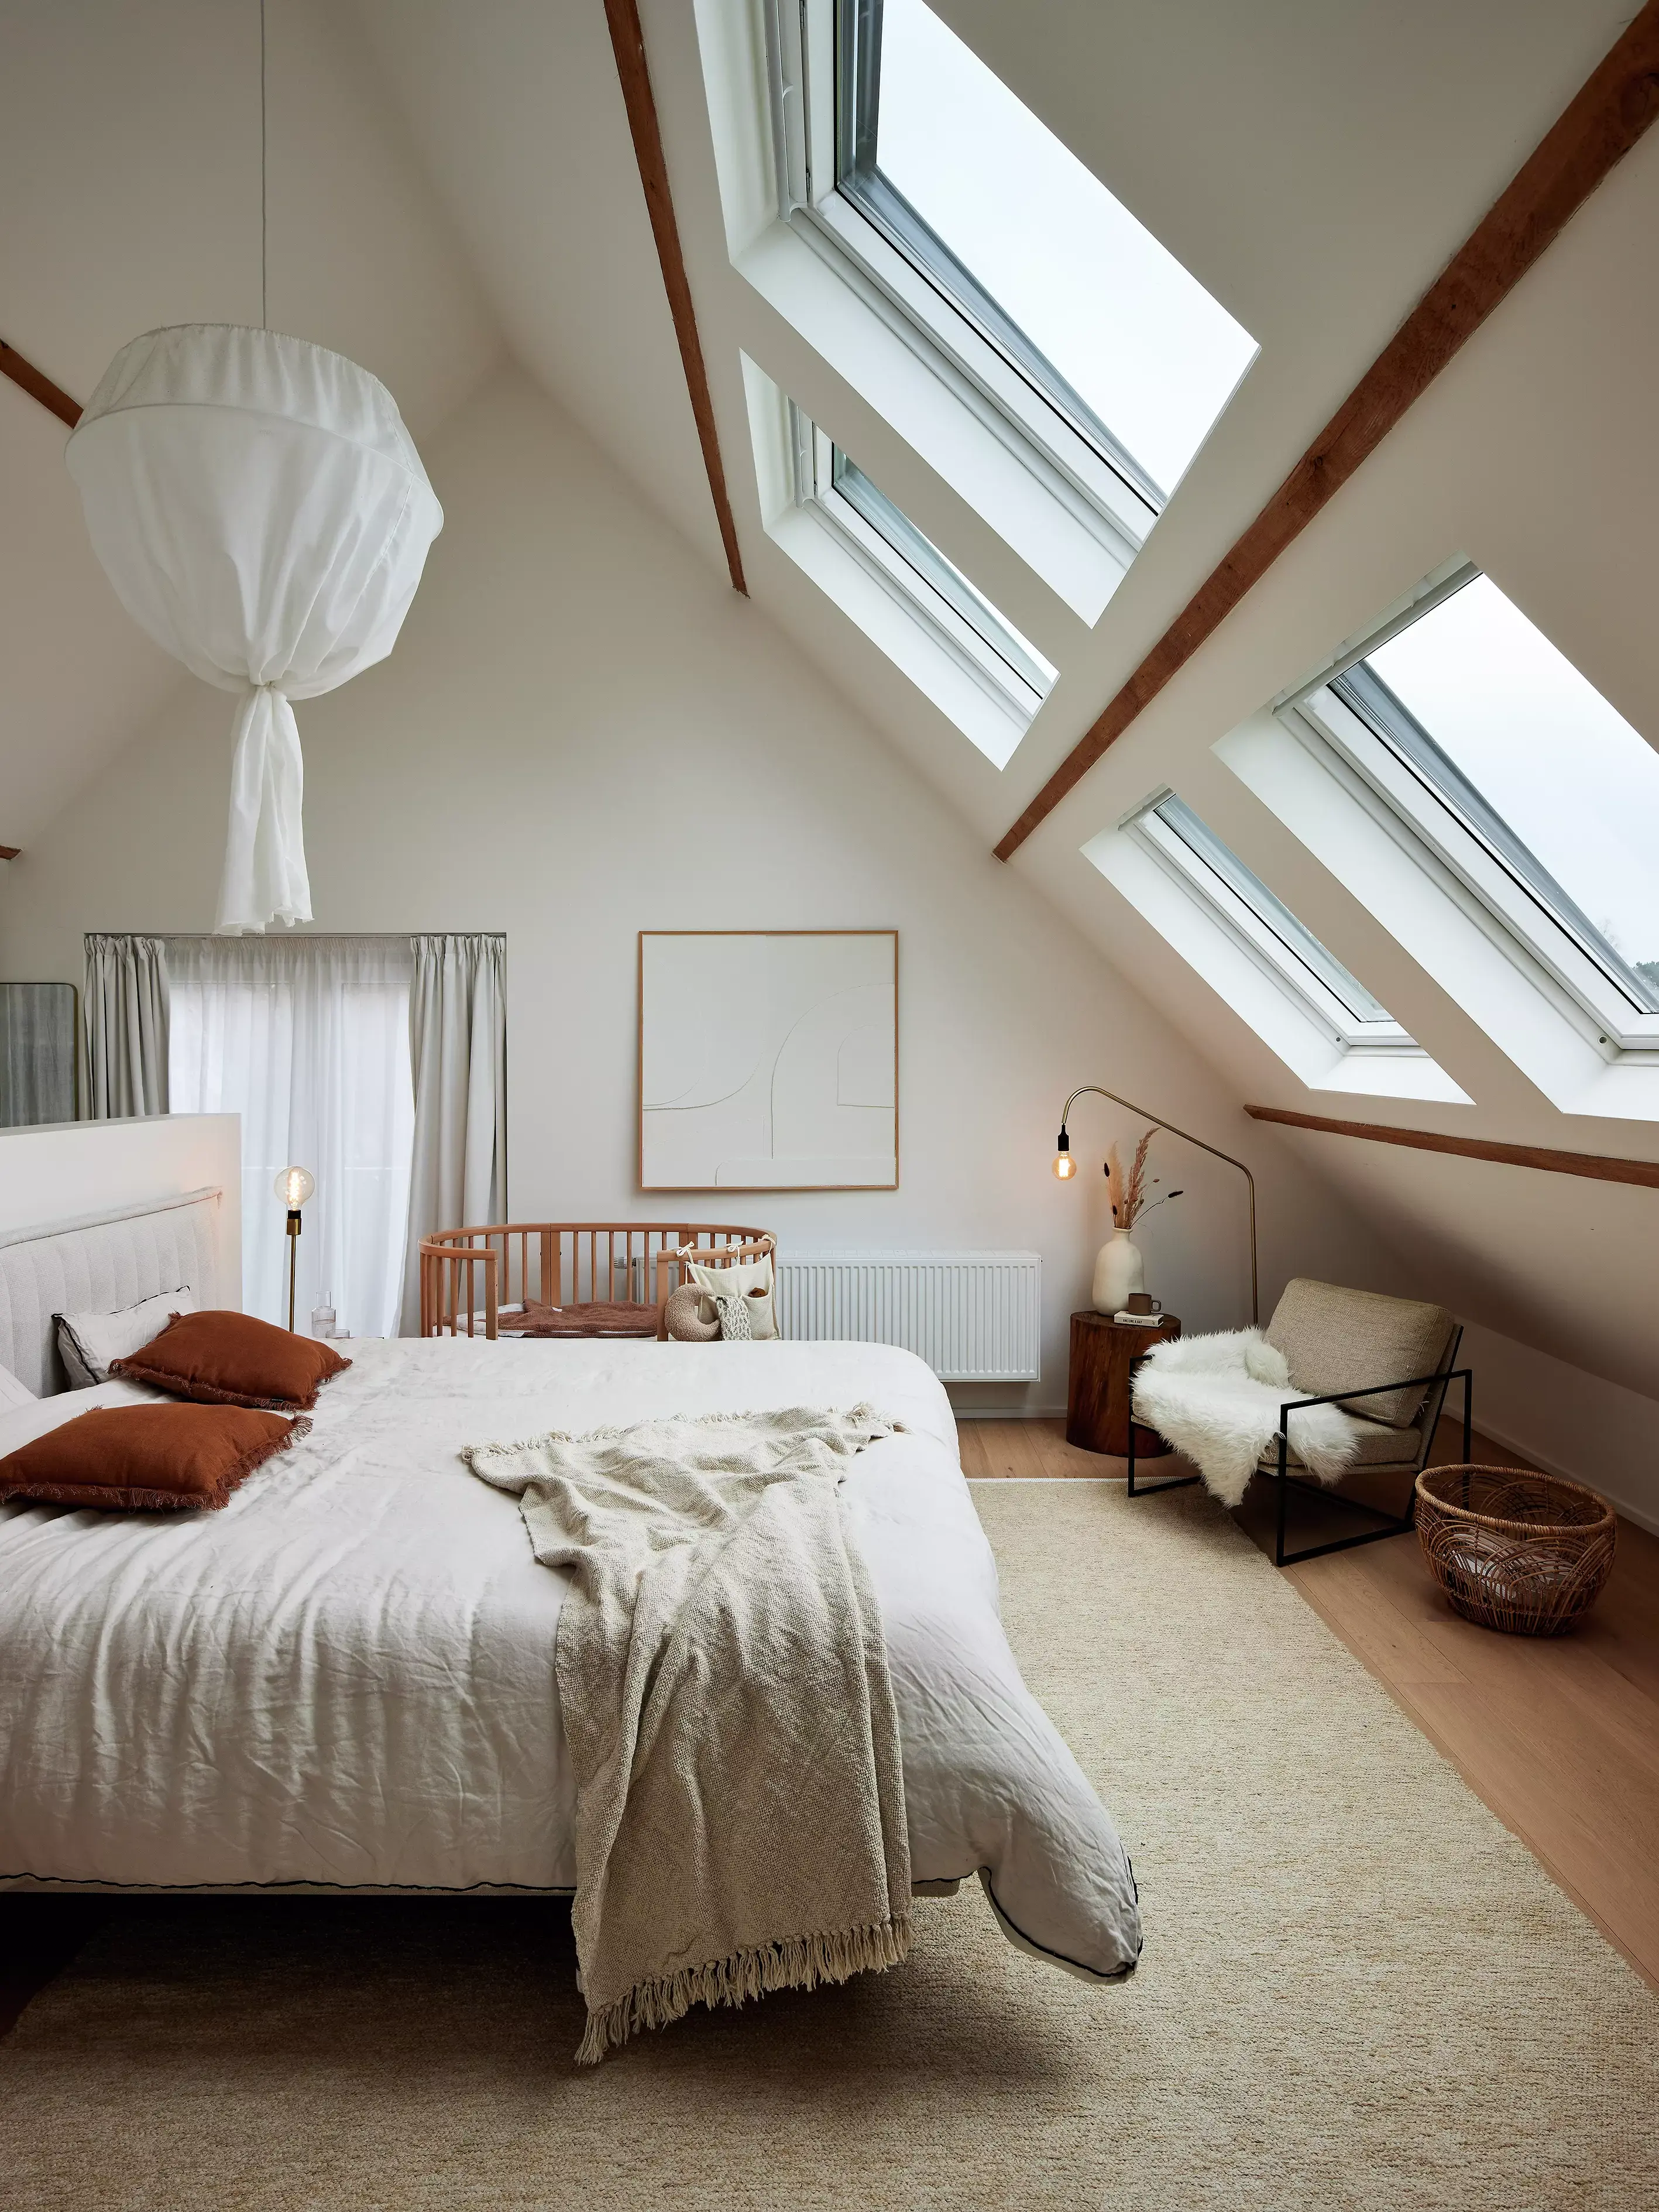 Camera da letto mansarda luminosa con finestre per tetti VELUX e arredamento accogliente.